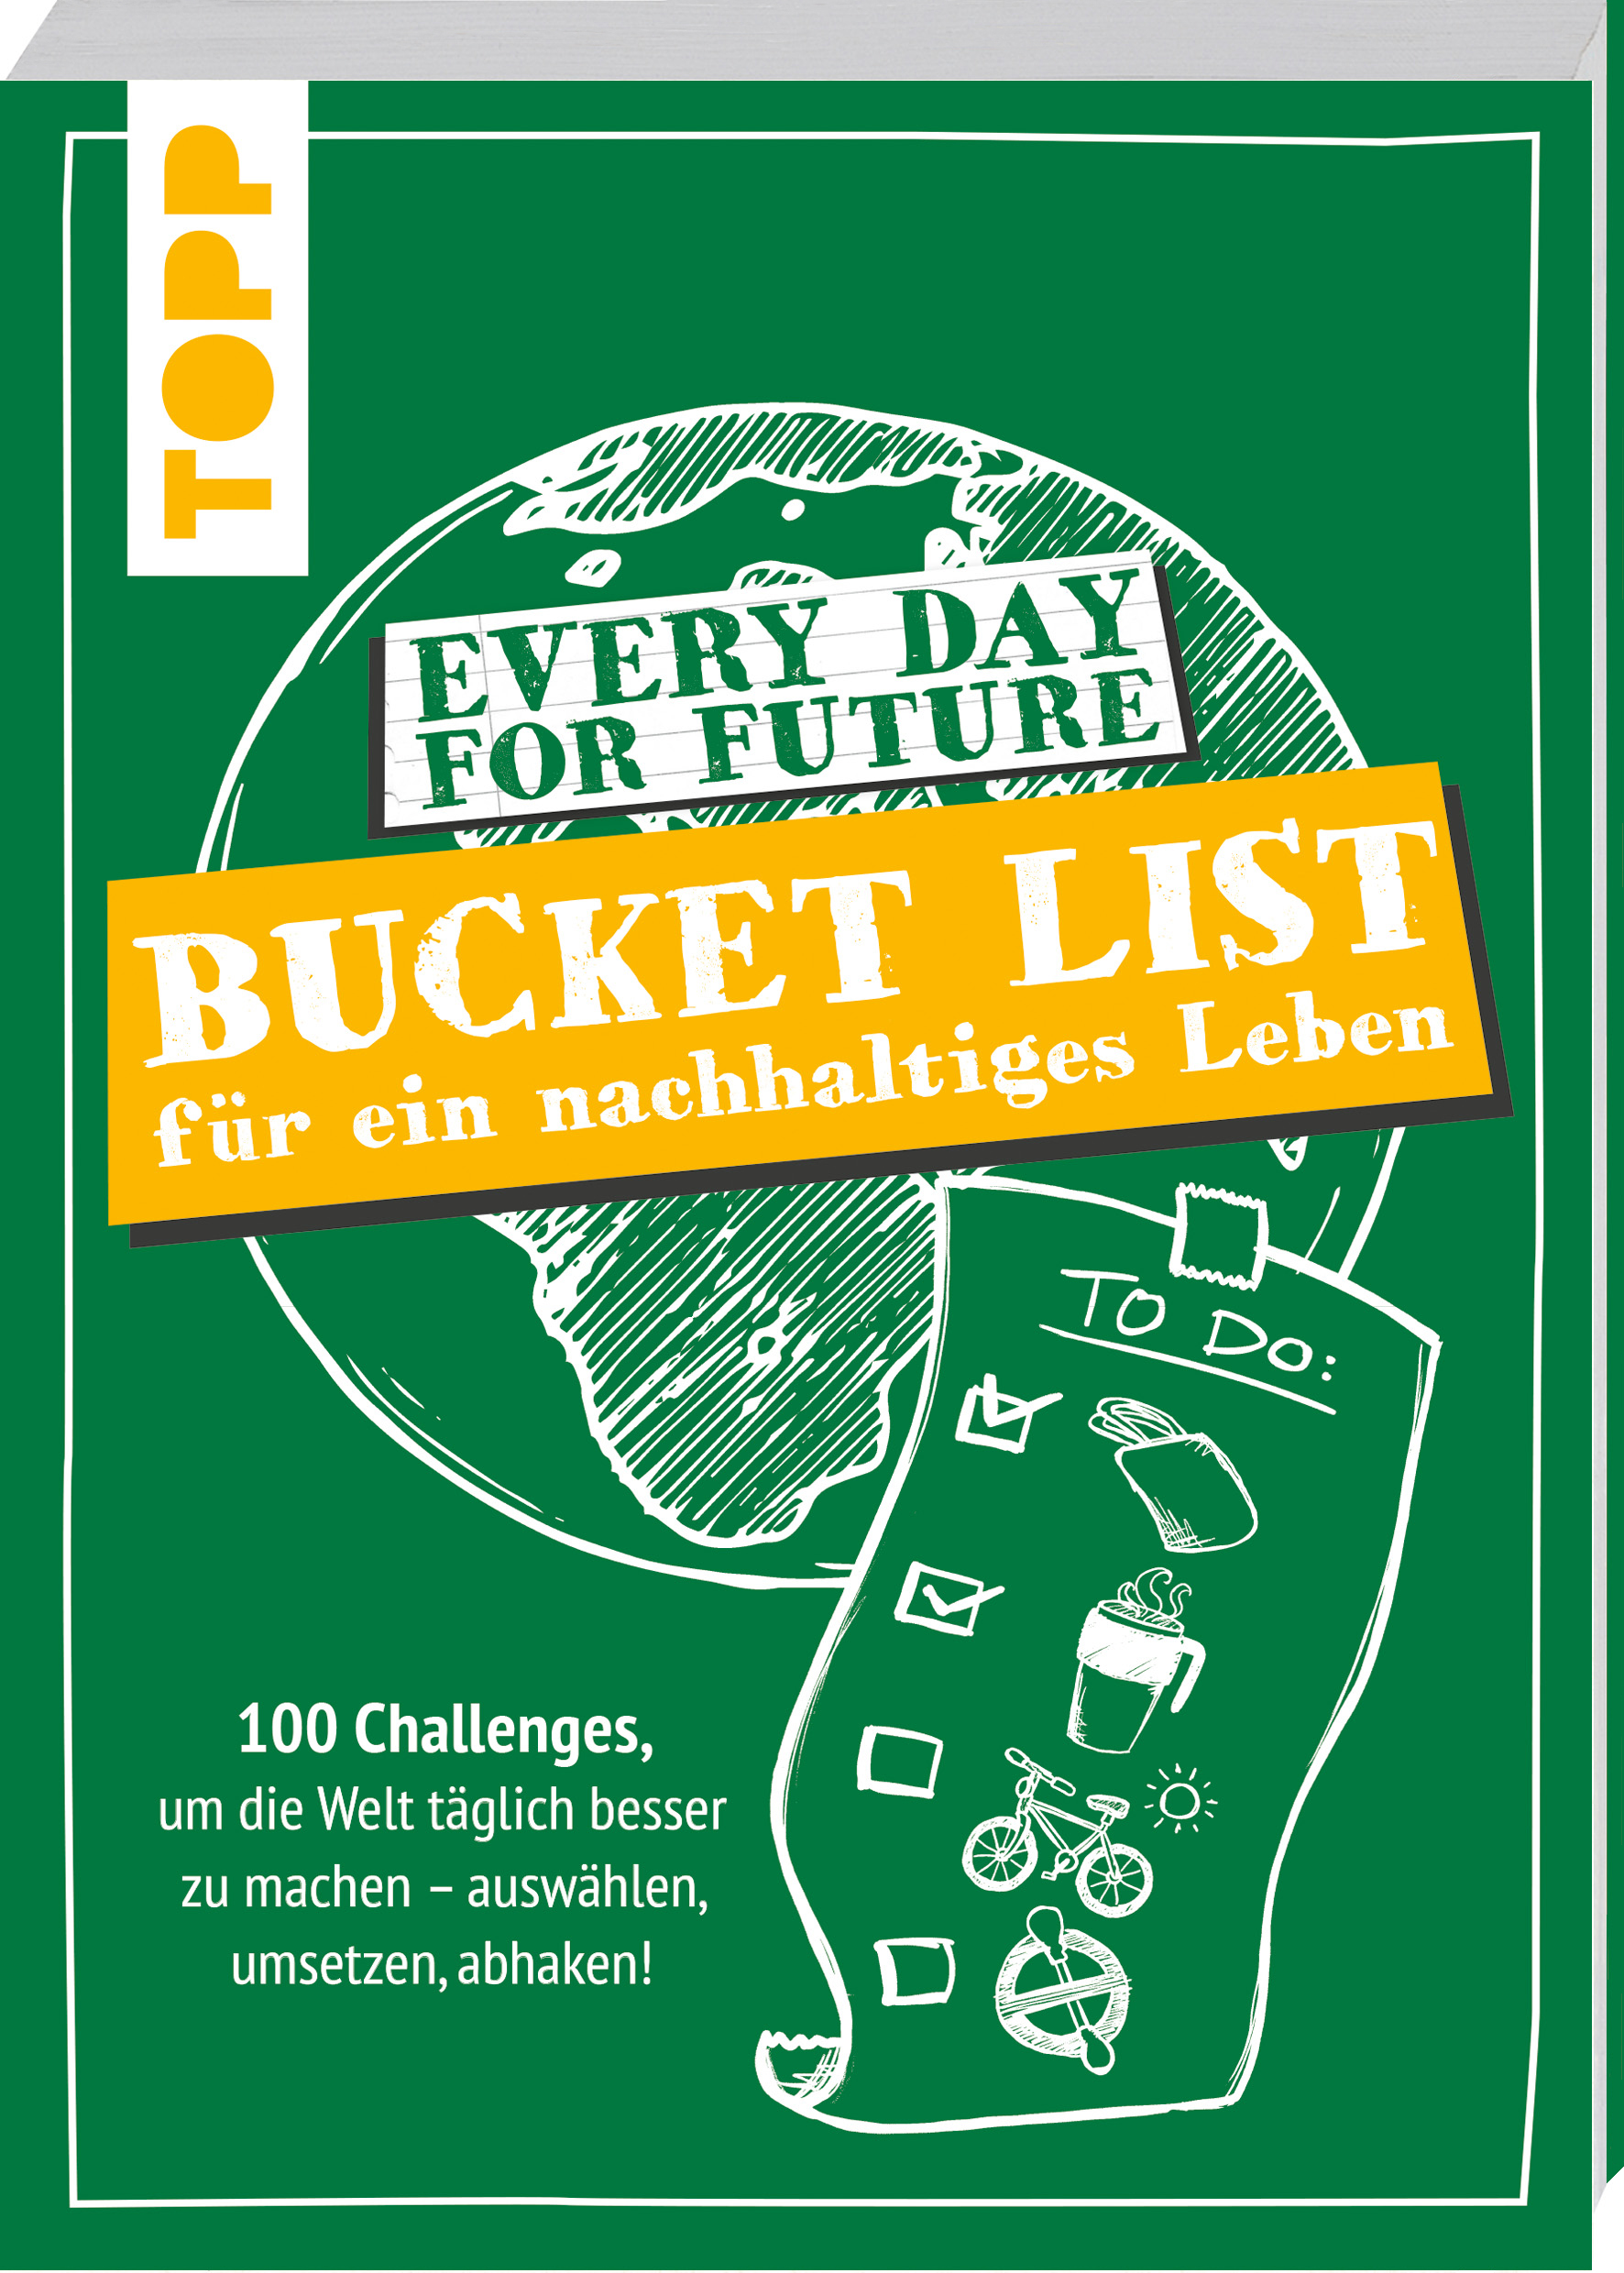 Every Day For Future – Bucket List für ein nachhaltiges Leben: 100 Challenges, um die Welt täglich besser zu machen – auswählen, umsetzen, abhaken!